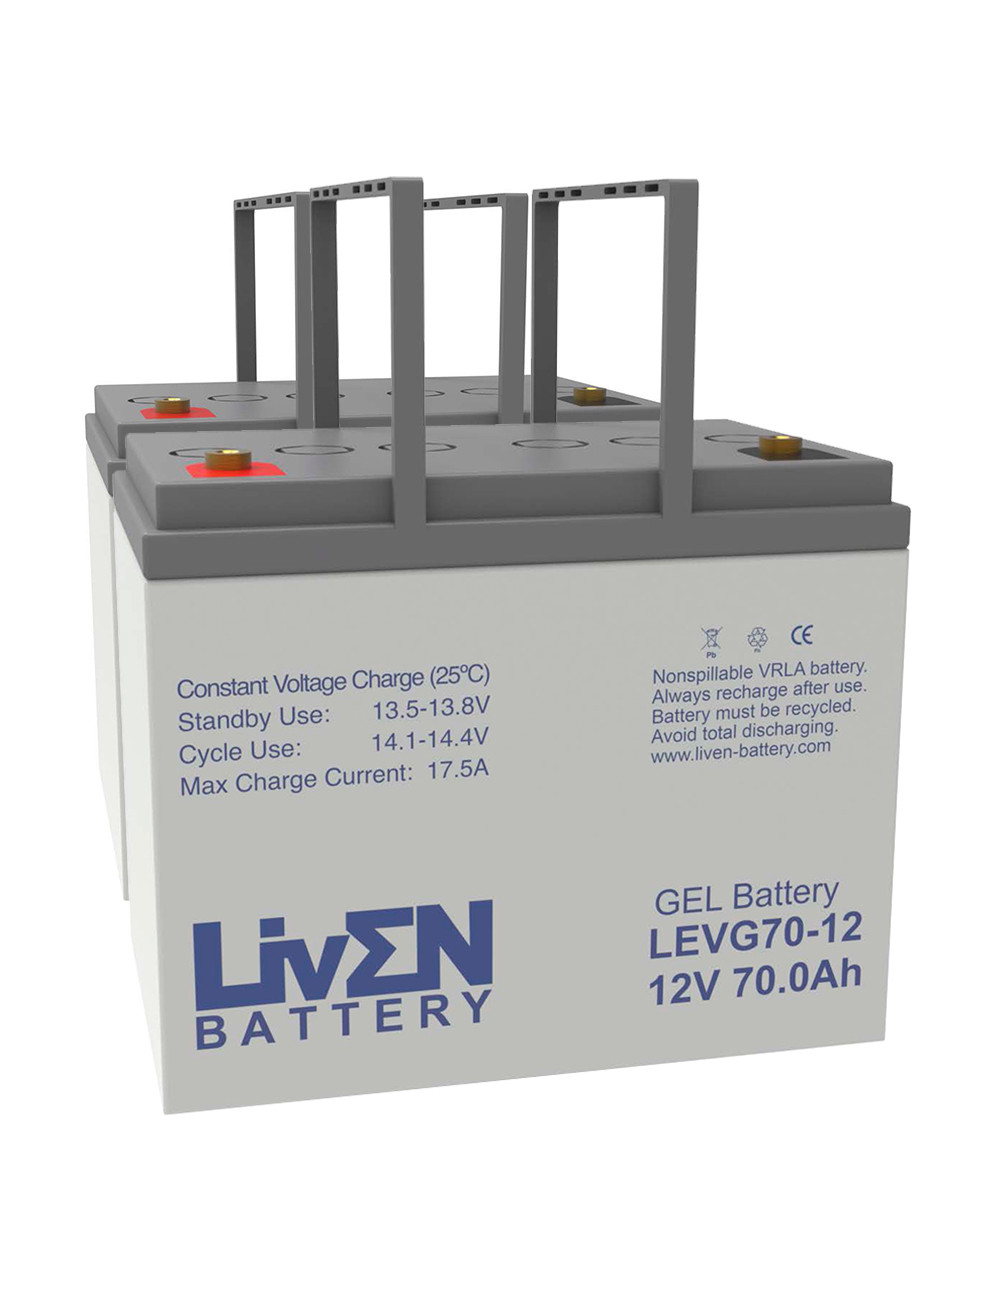 Pack 2 baterías de gel para silla de ruedas y scooter eléctrico de 12V 70Ah C20 ciclo profundo Liven LEVG70-12 - 2xLEVG70-12 -  